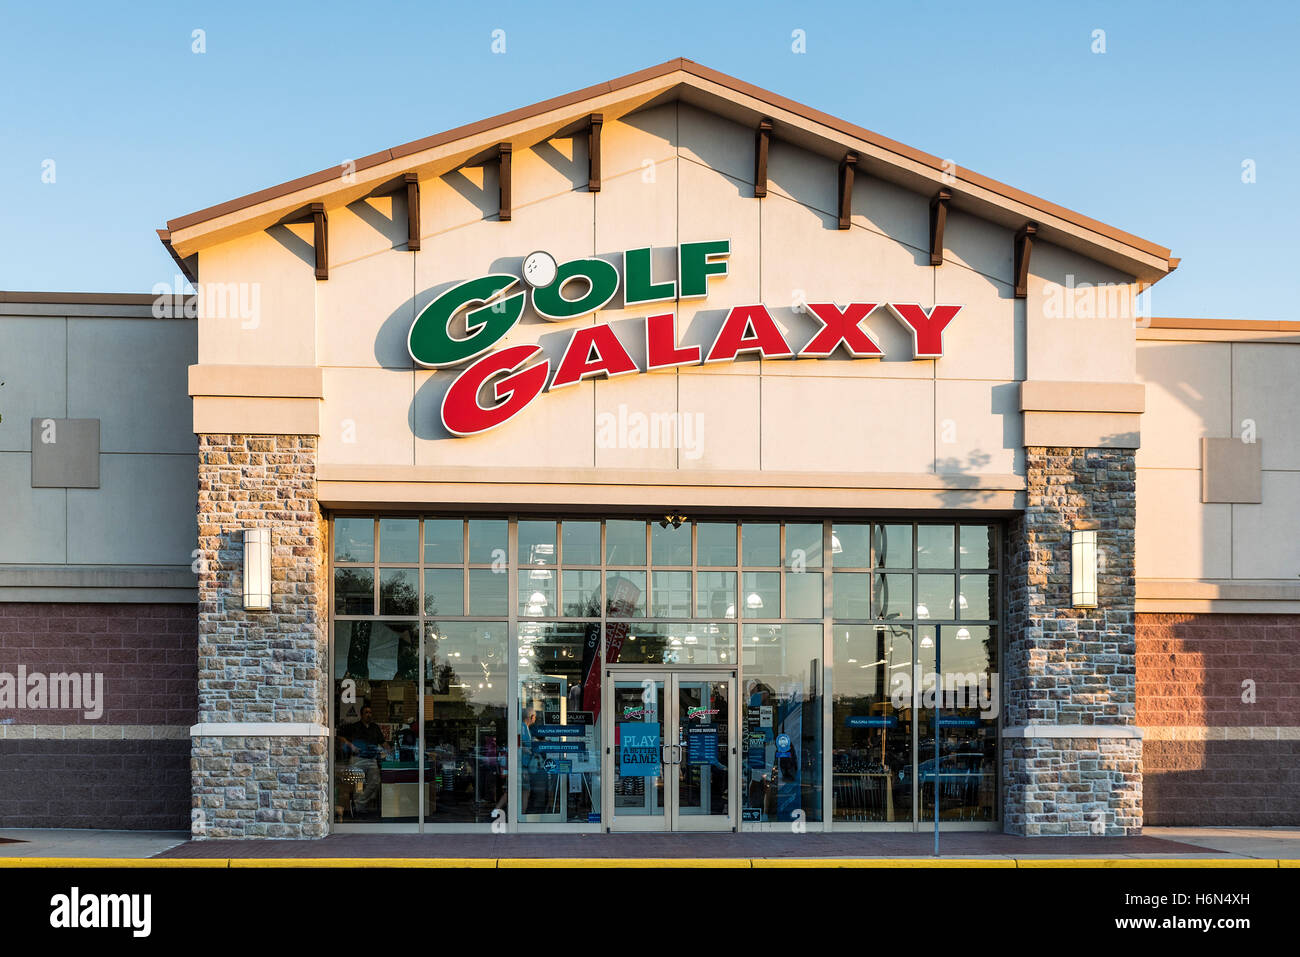 Galaxy Golf tienda especializada. Foto de stock